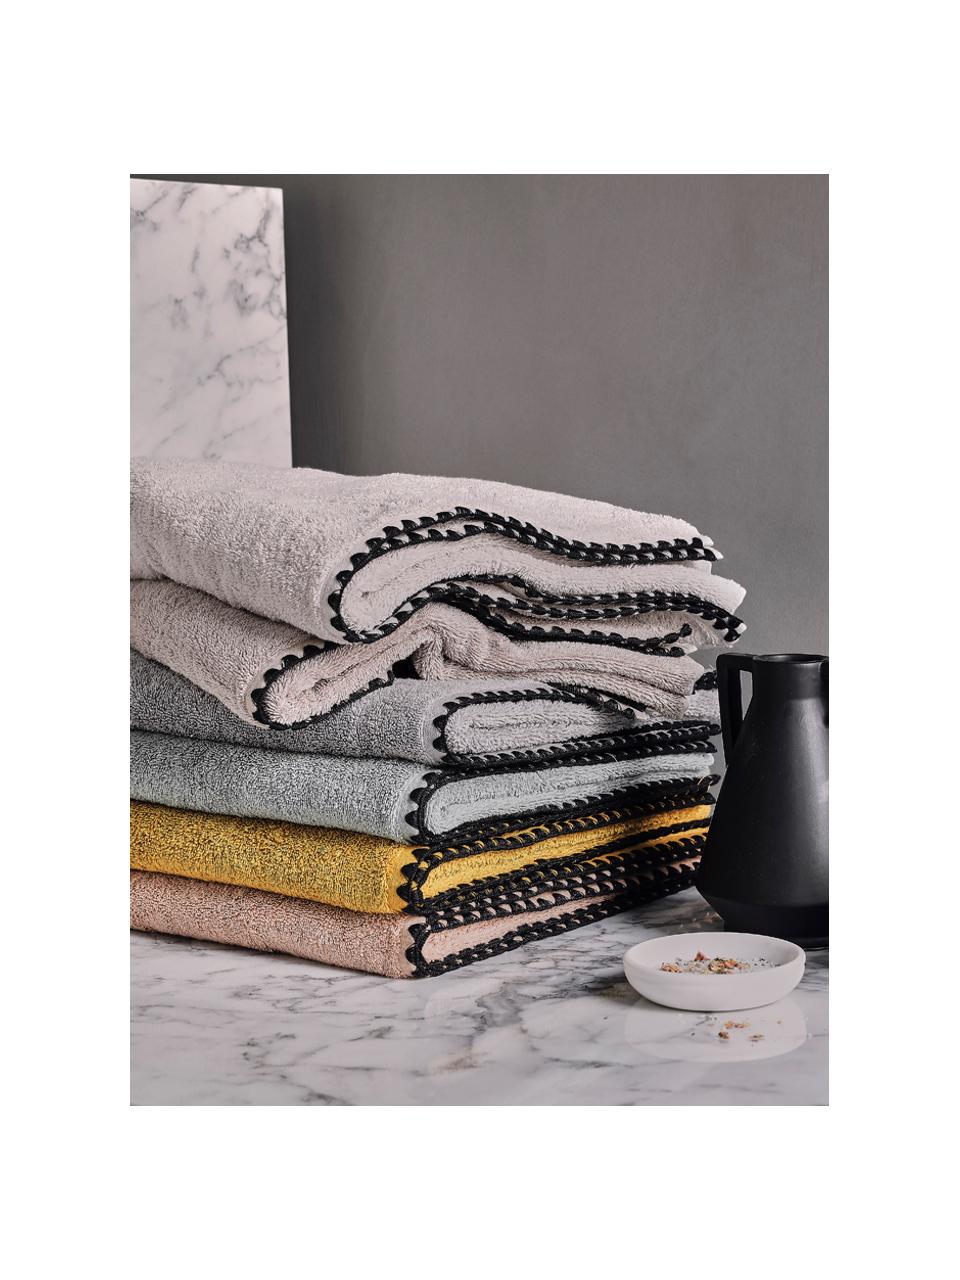 Handtuch Issey in verschiedenen Größen, mit bestickter Borte, Gebrochenes Weiß, Schwarz, Handtuch, B 50 x L 100 cm, 2 Stück